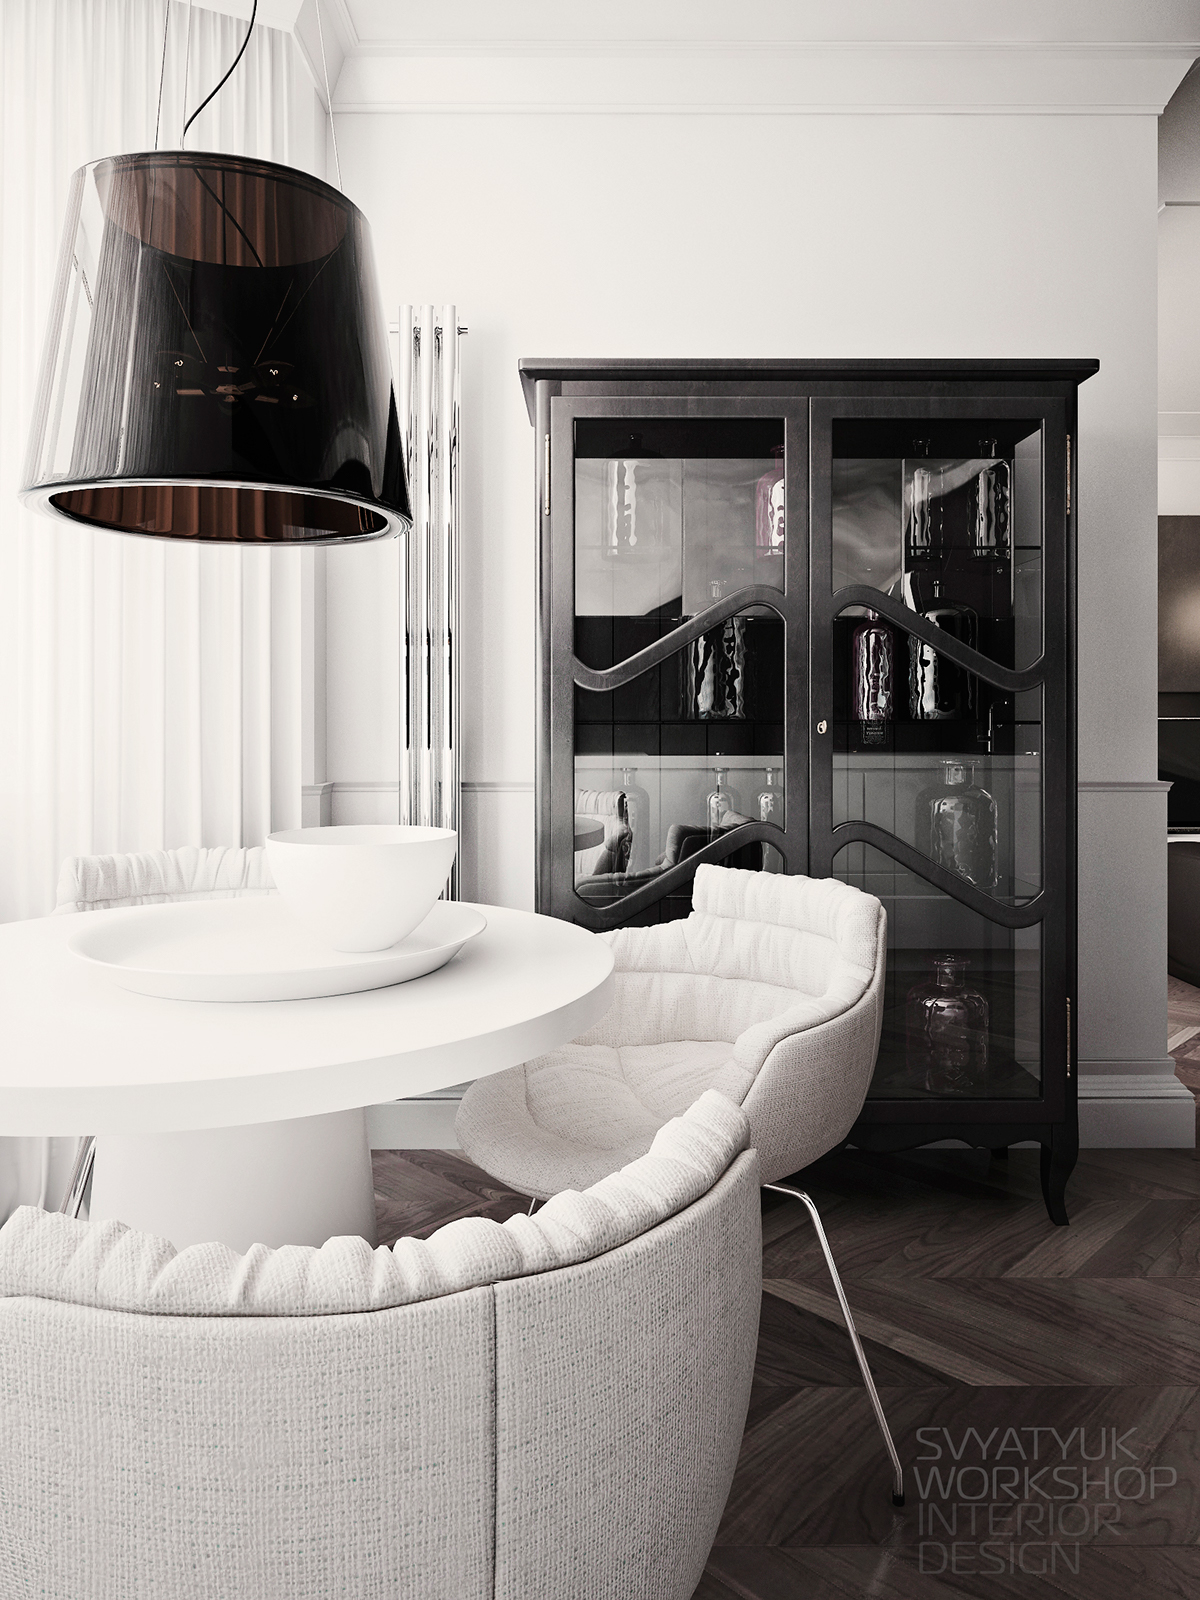 apartment Interior design vray CG kitchen дизайн интерьер кухня 3ds max